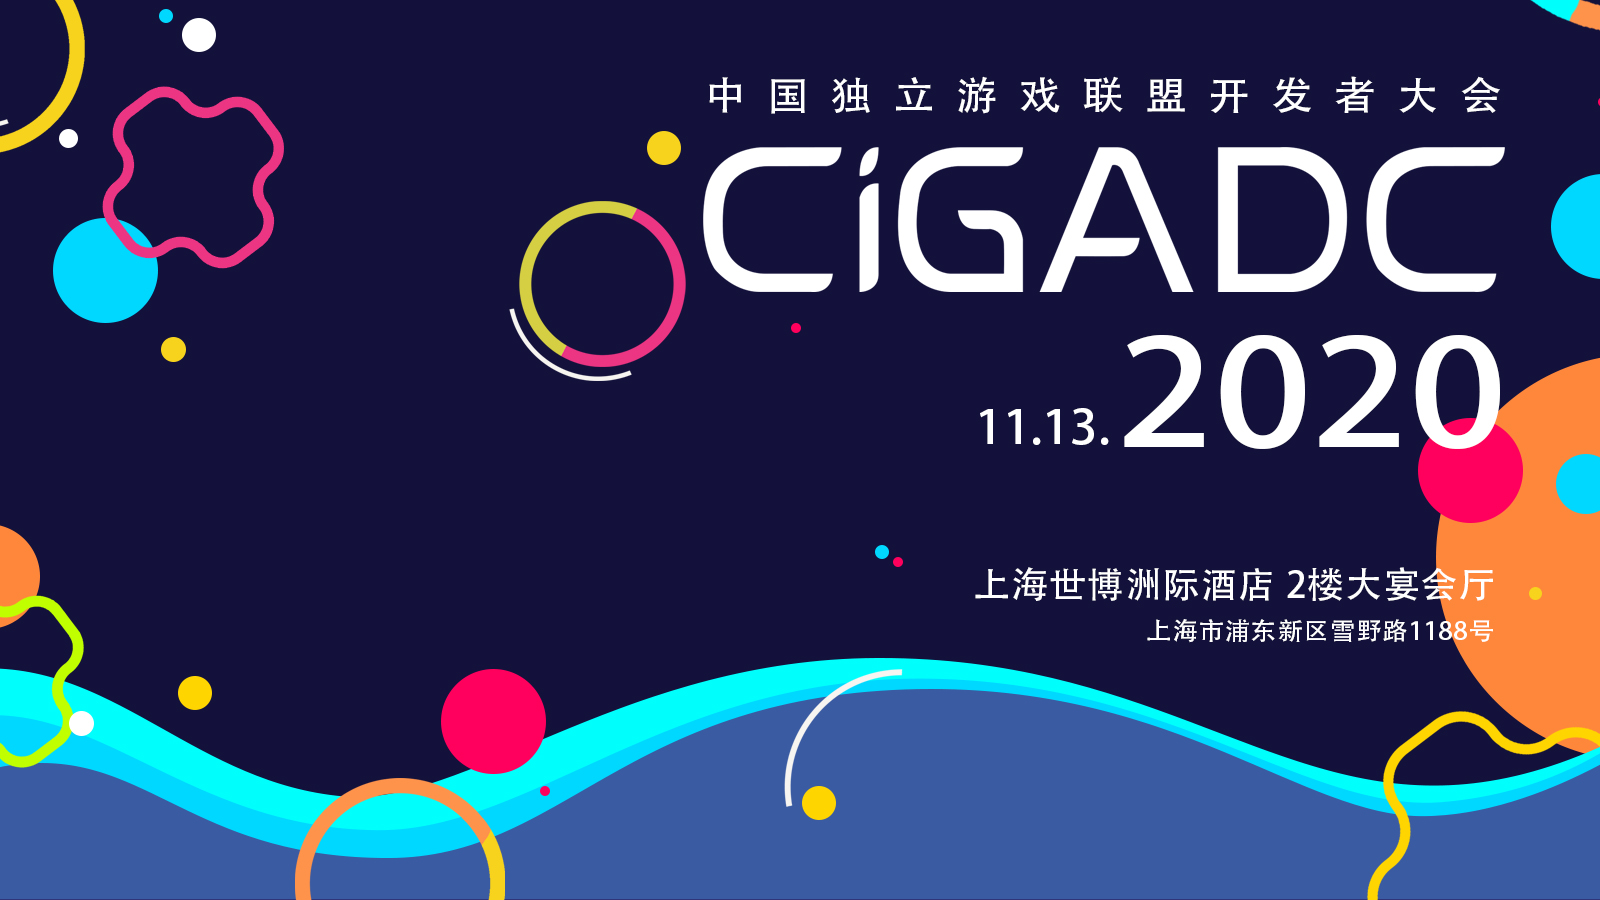 让世界认识你-任天堂（日本）的业务部将在CiGADC 2020 进行官方分享